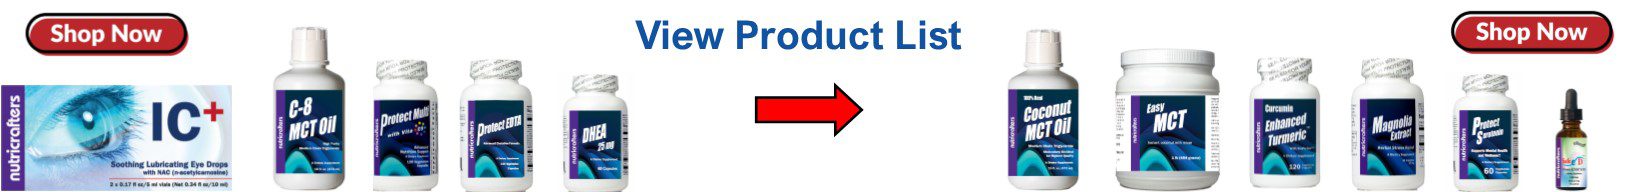 Product List Slide